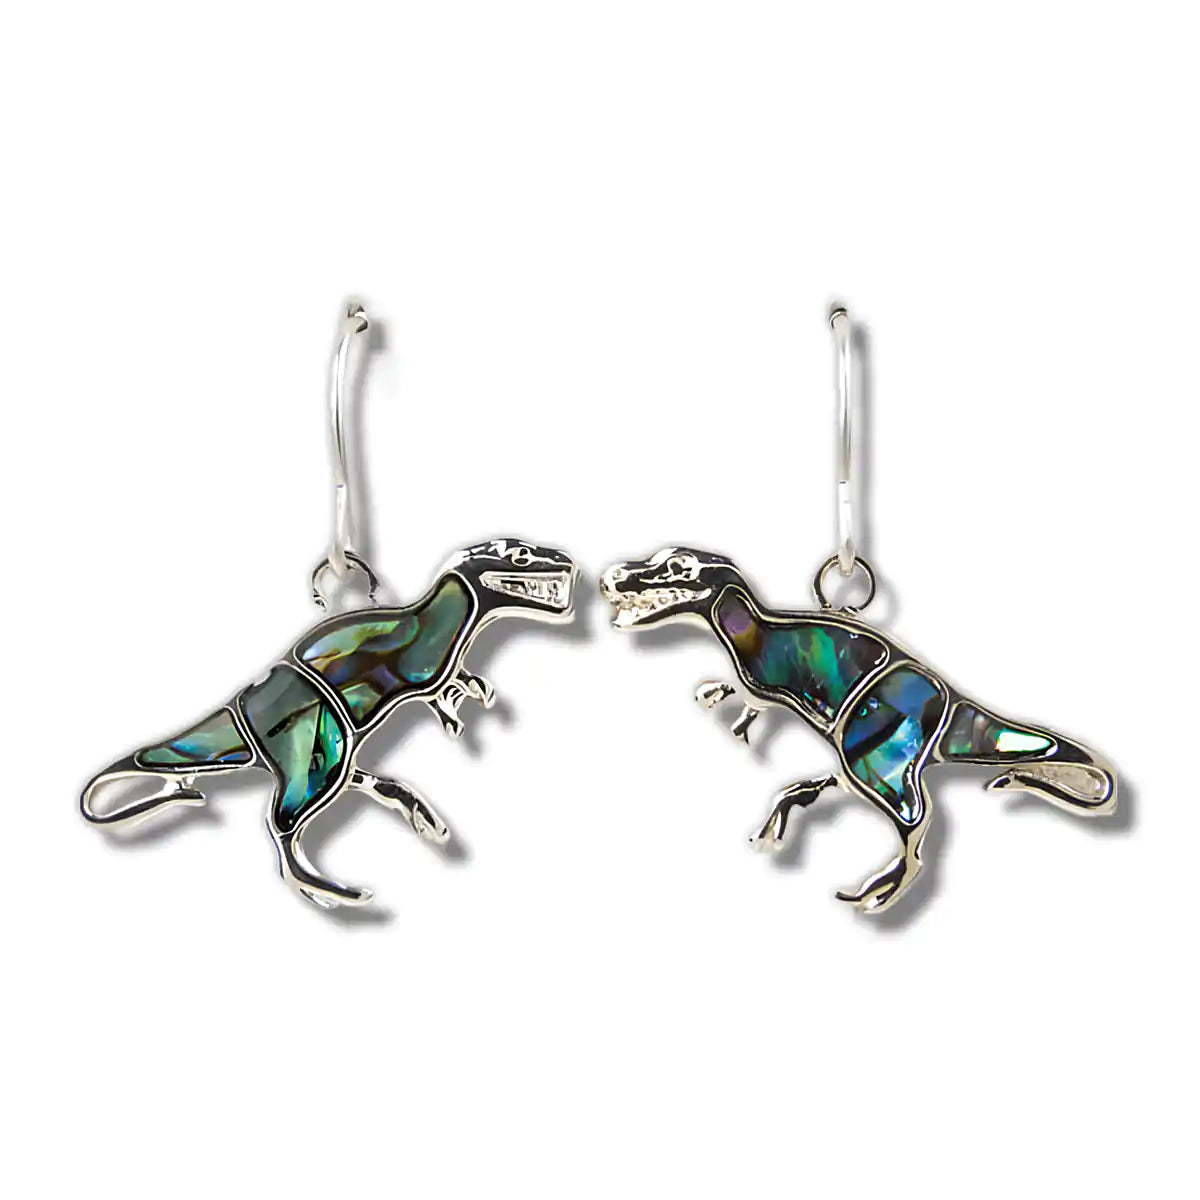 Glacier pearle t-rex earrings